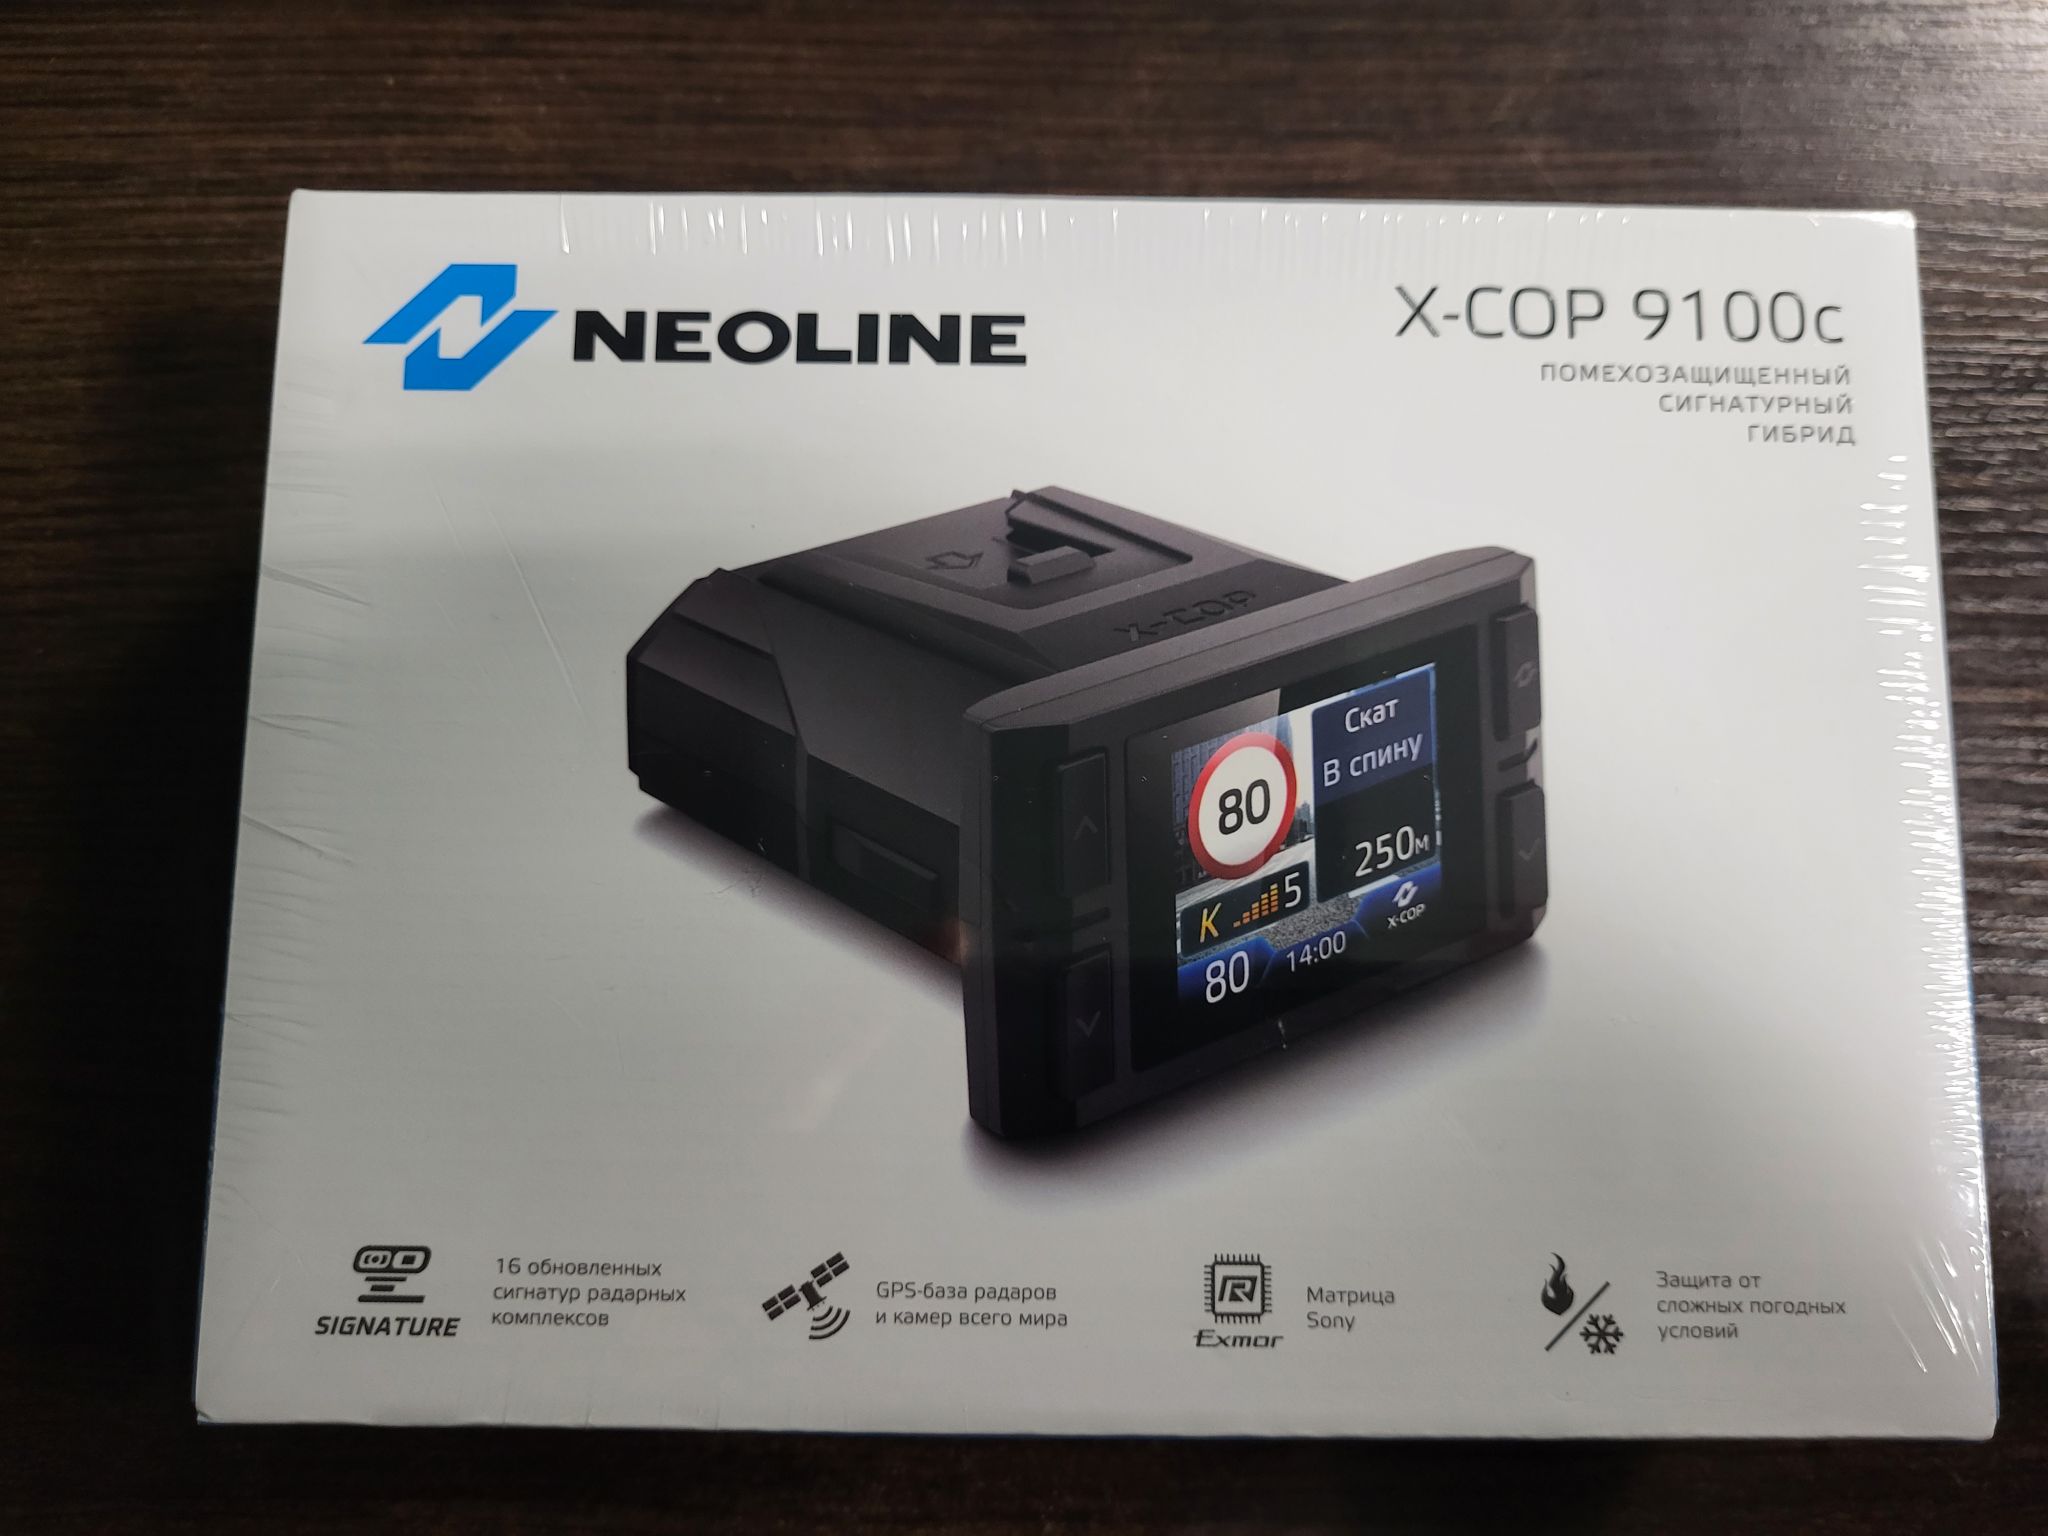 Neoline x cop 9100c. Neoline x-cop 9100x. Neoline x-cop 9100s обновление базы радаров.